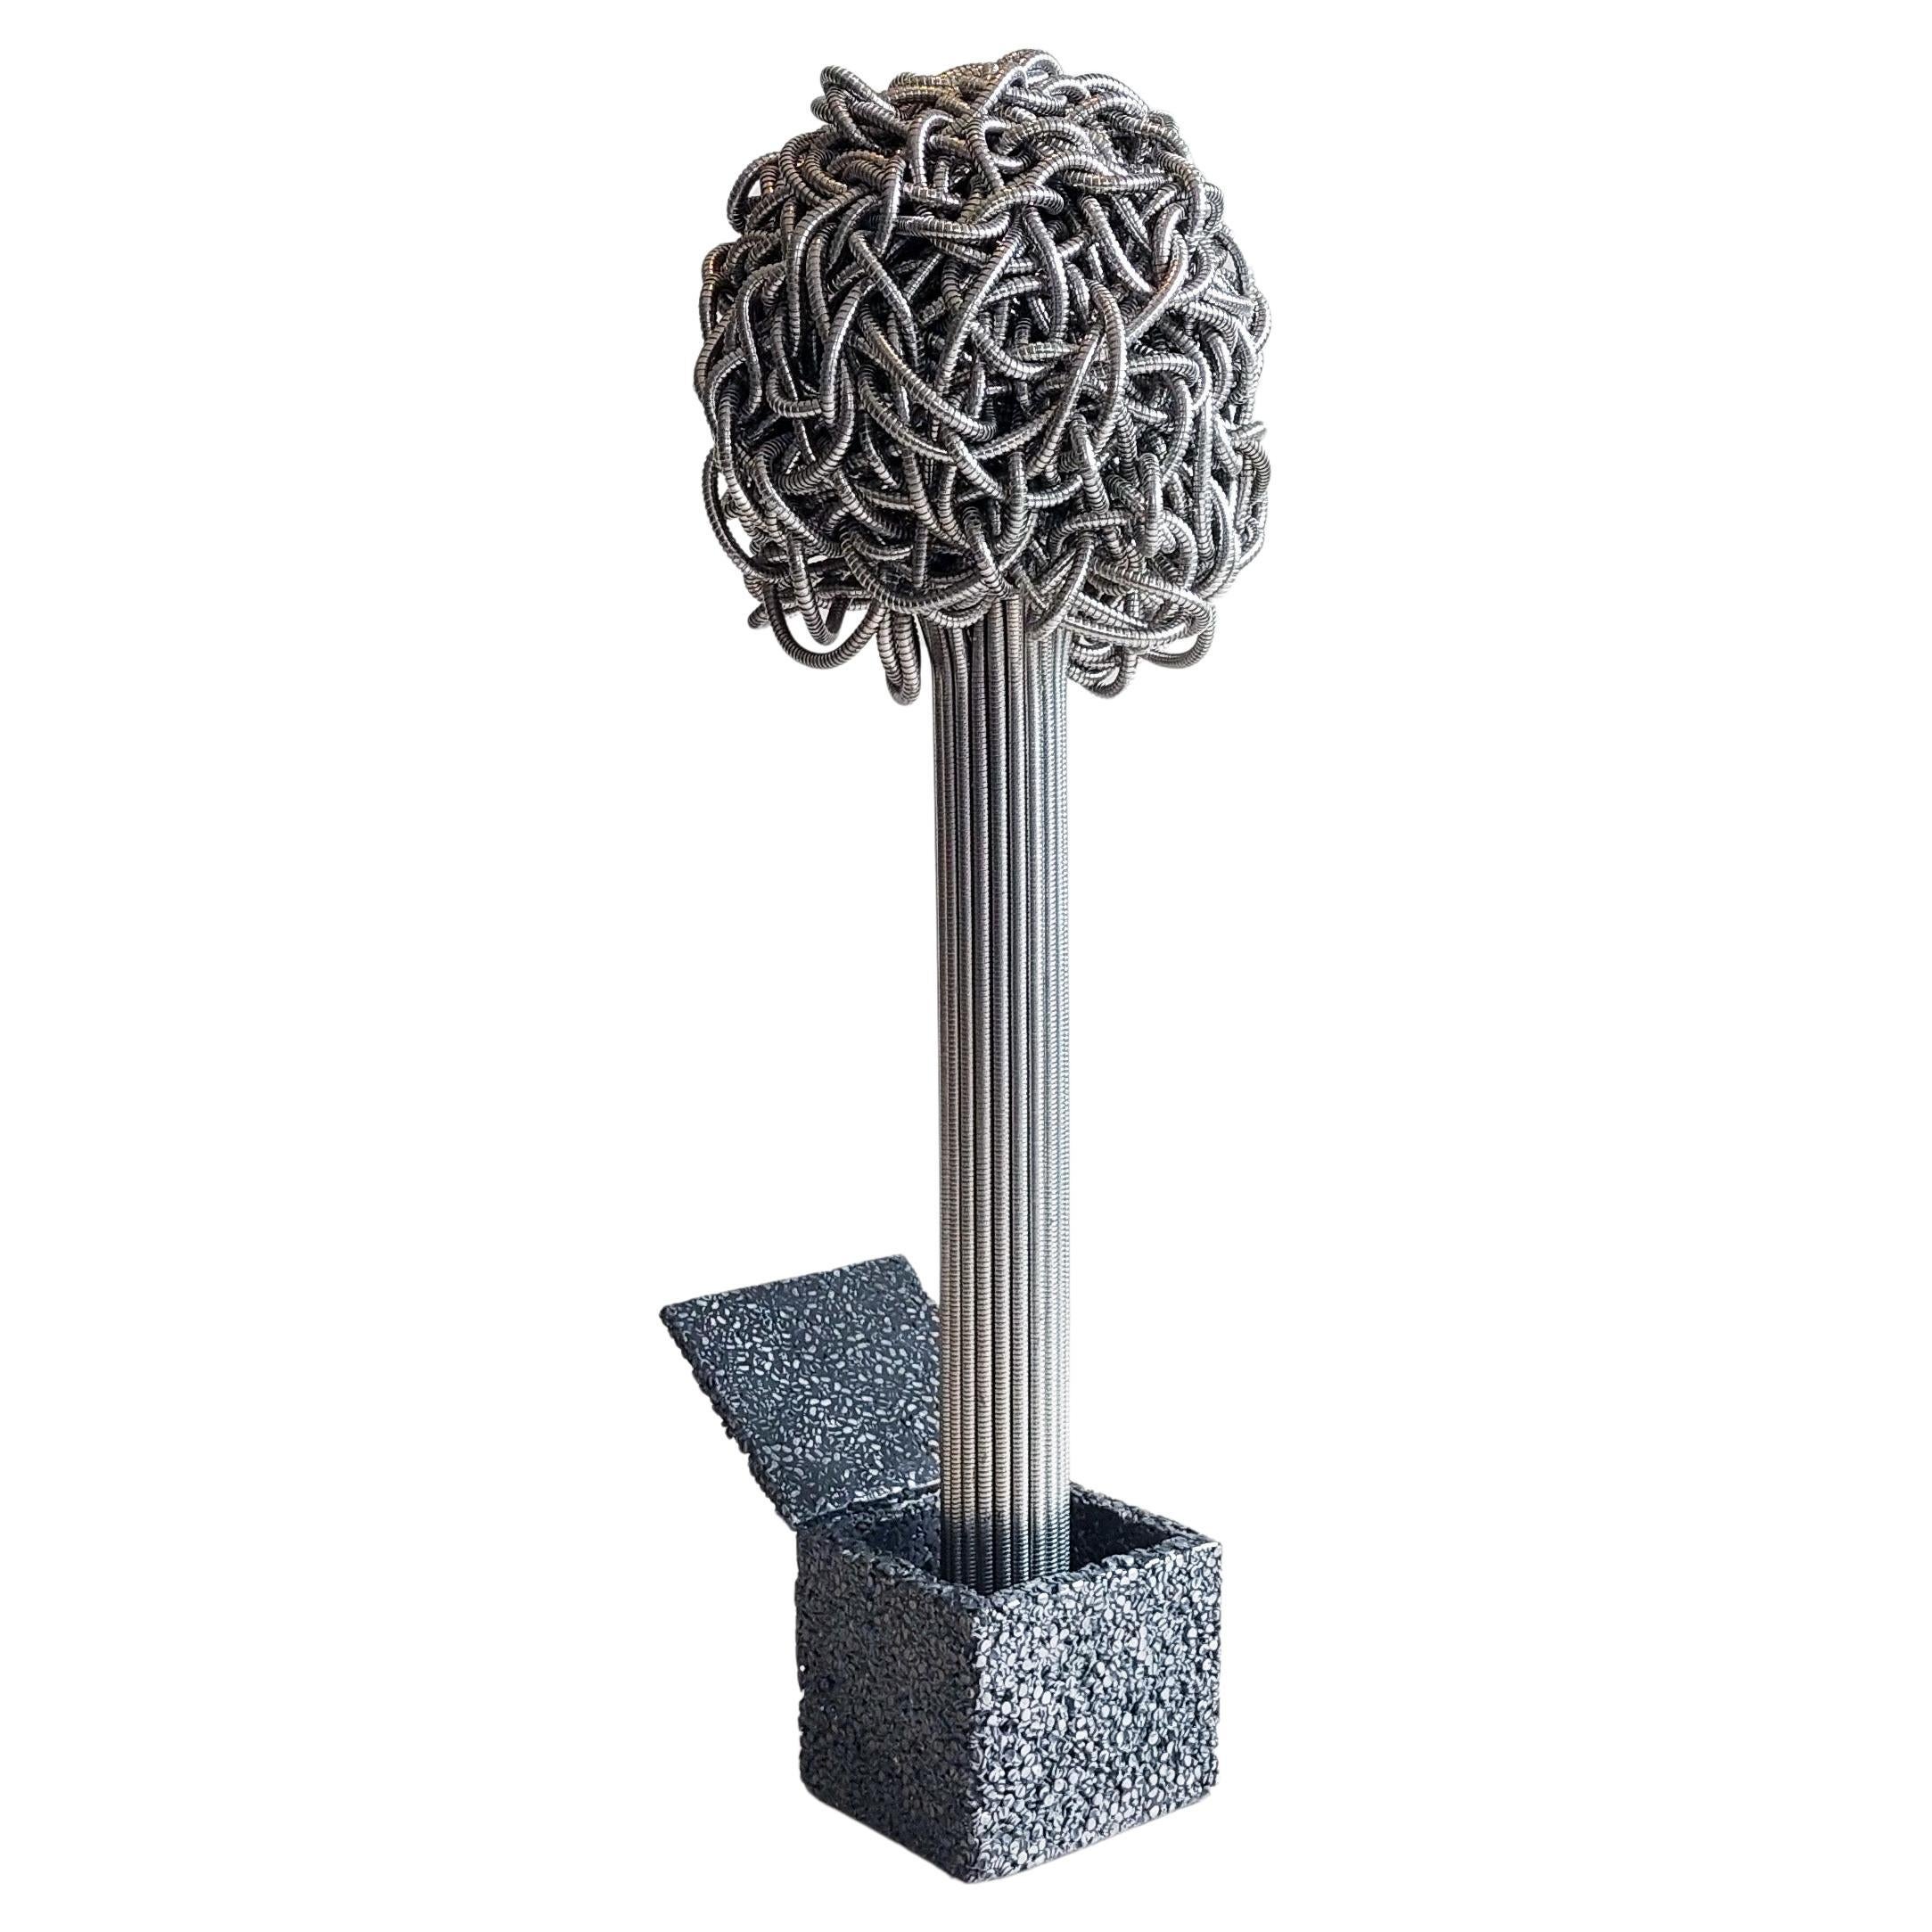 Sculpture de Jack Flux : objet organique, dynamique et cinétique